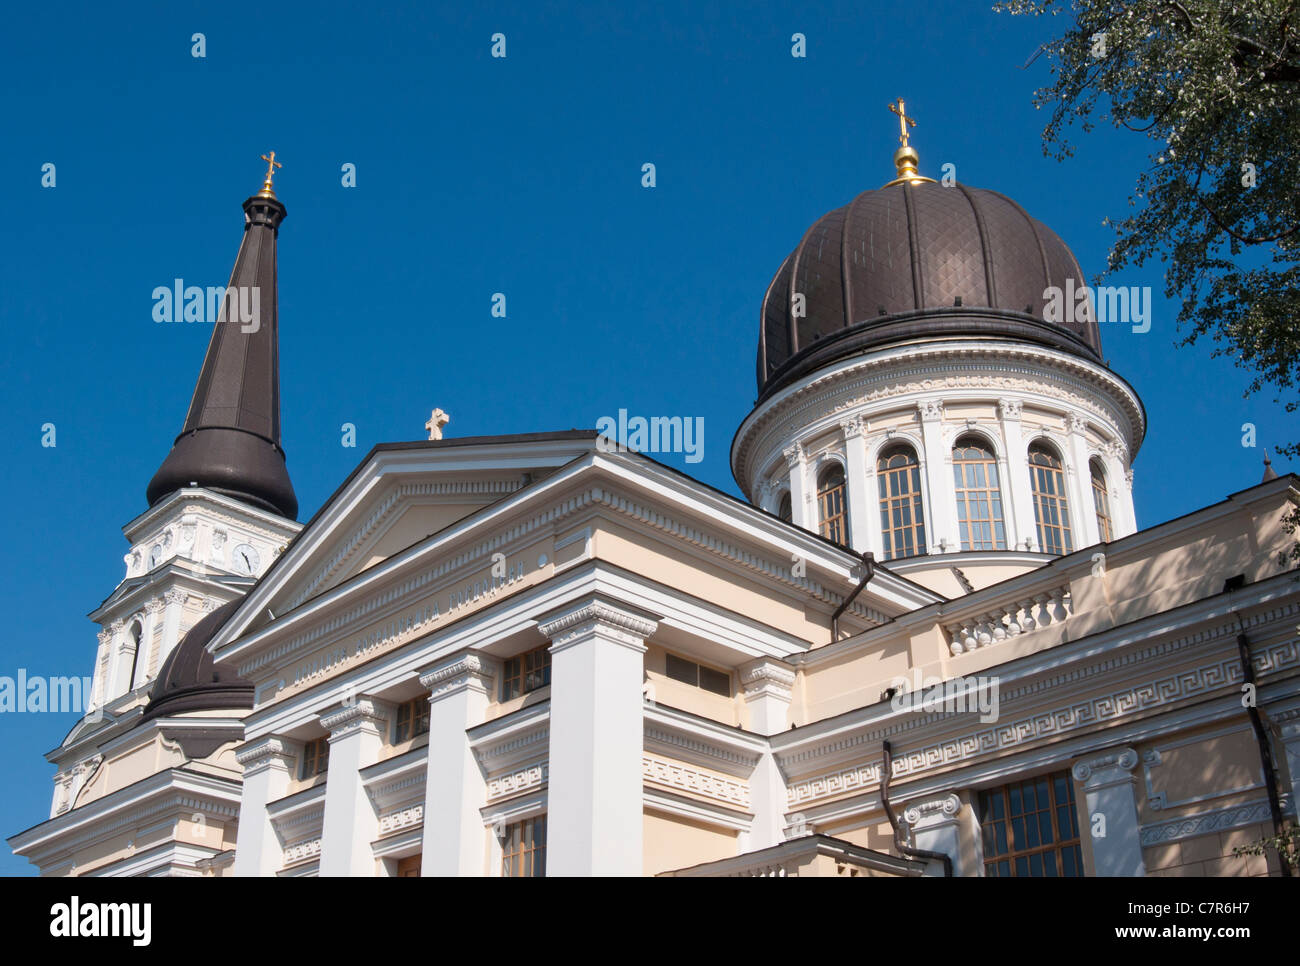 Spaso-Preobrazhenskiy Cathedral, Odessa, Ukraine. Stock Photo